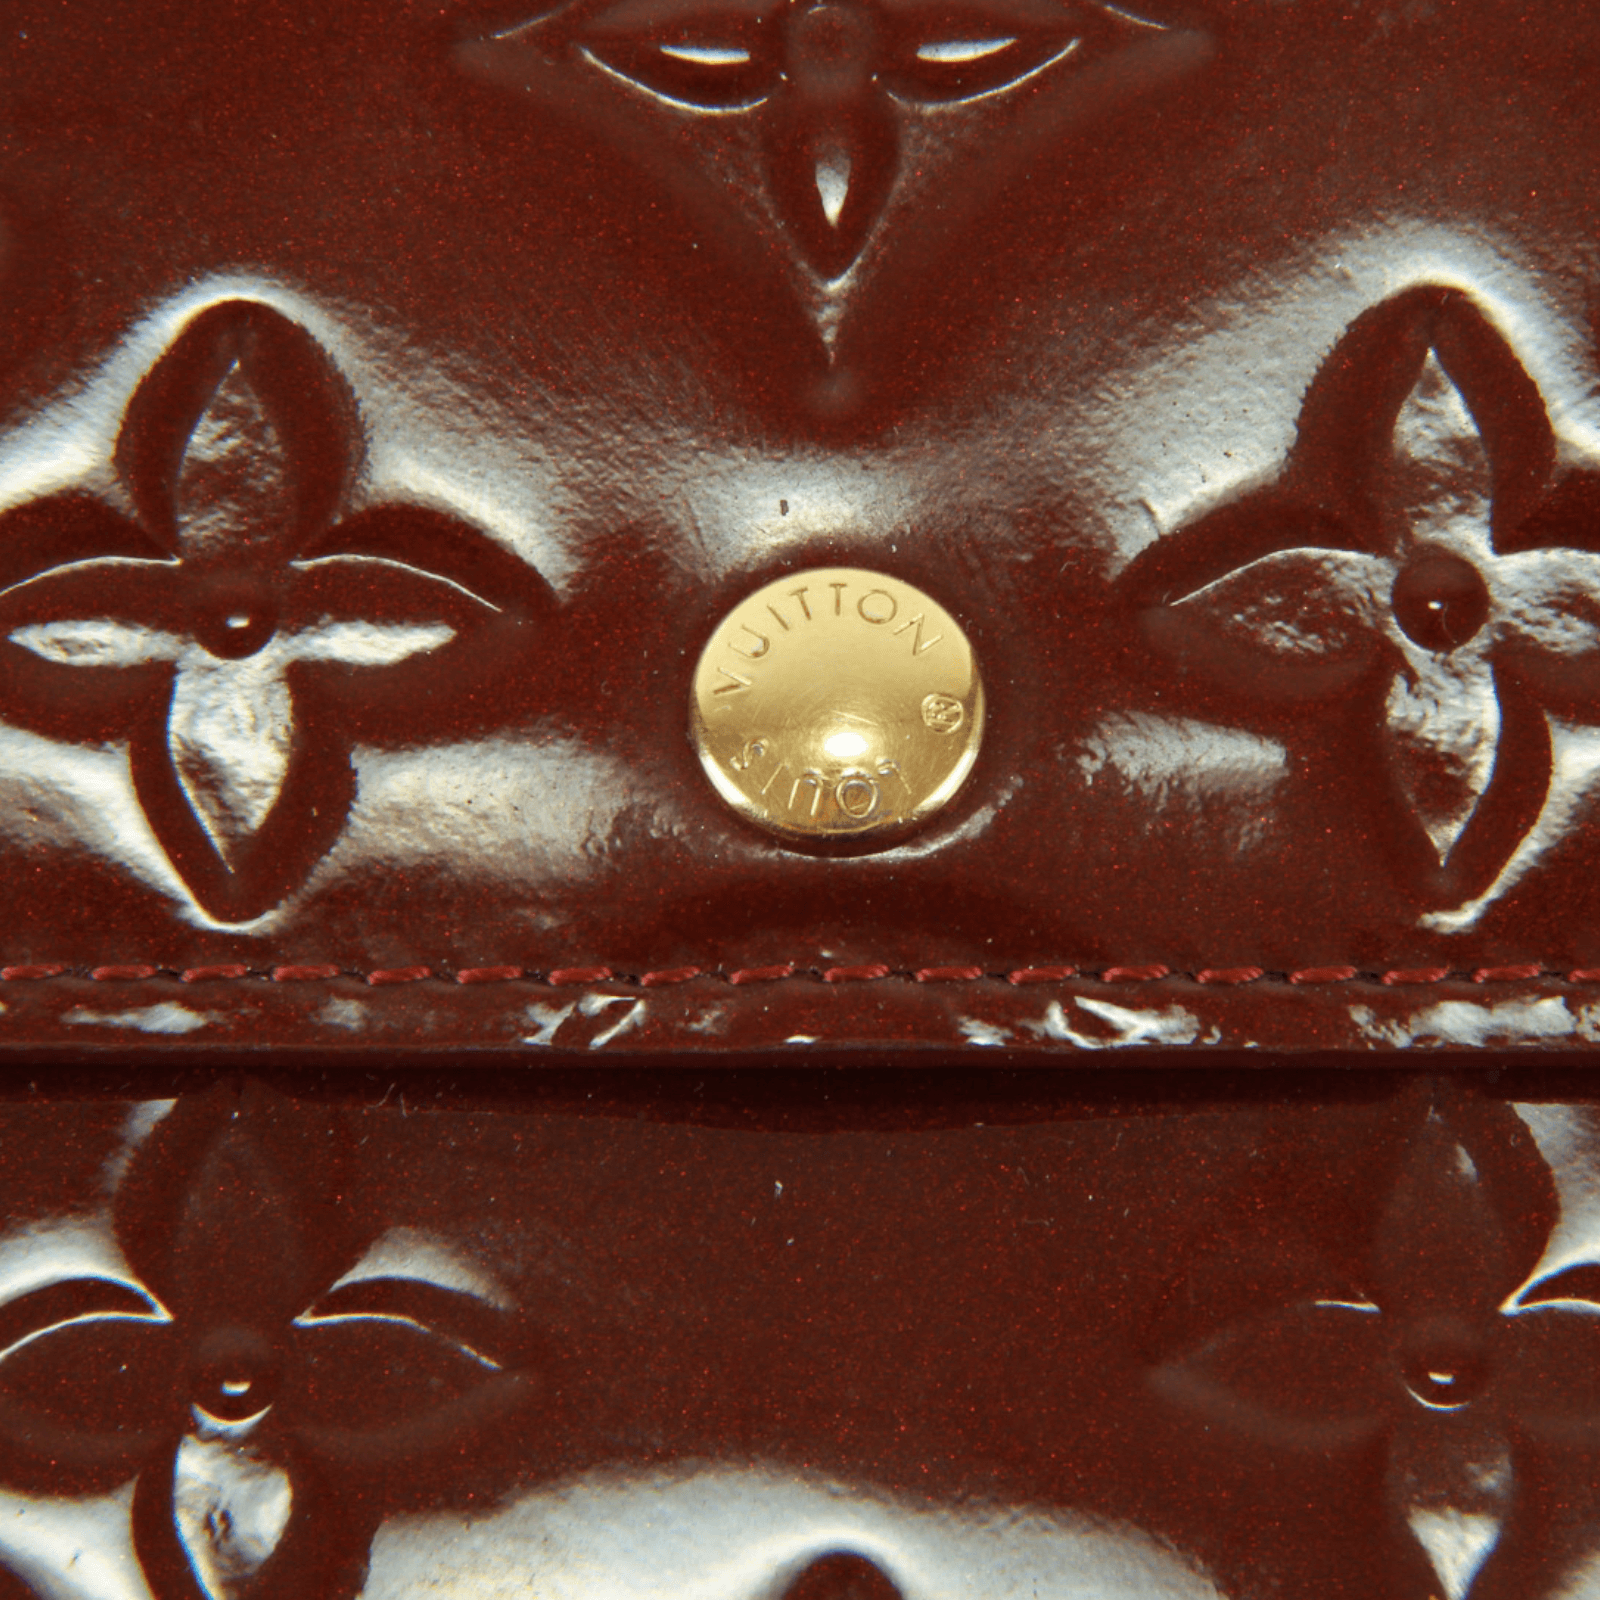 Louis Vuitton Vernis Tan Beige Gold Leather Long Cash Buttoned Envelope  Wallet